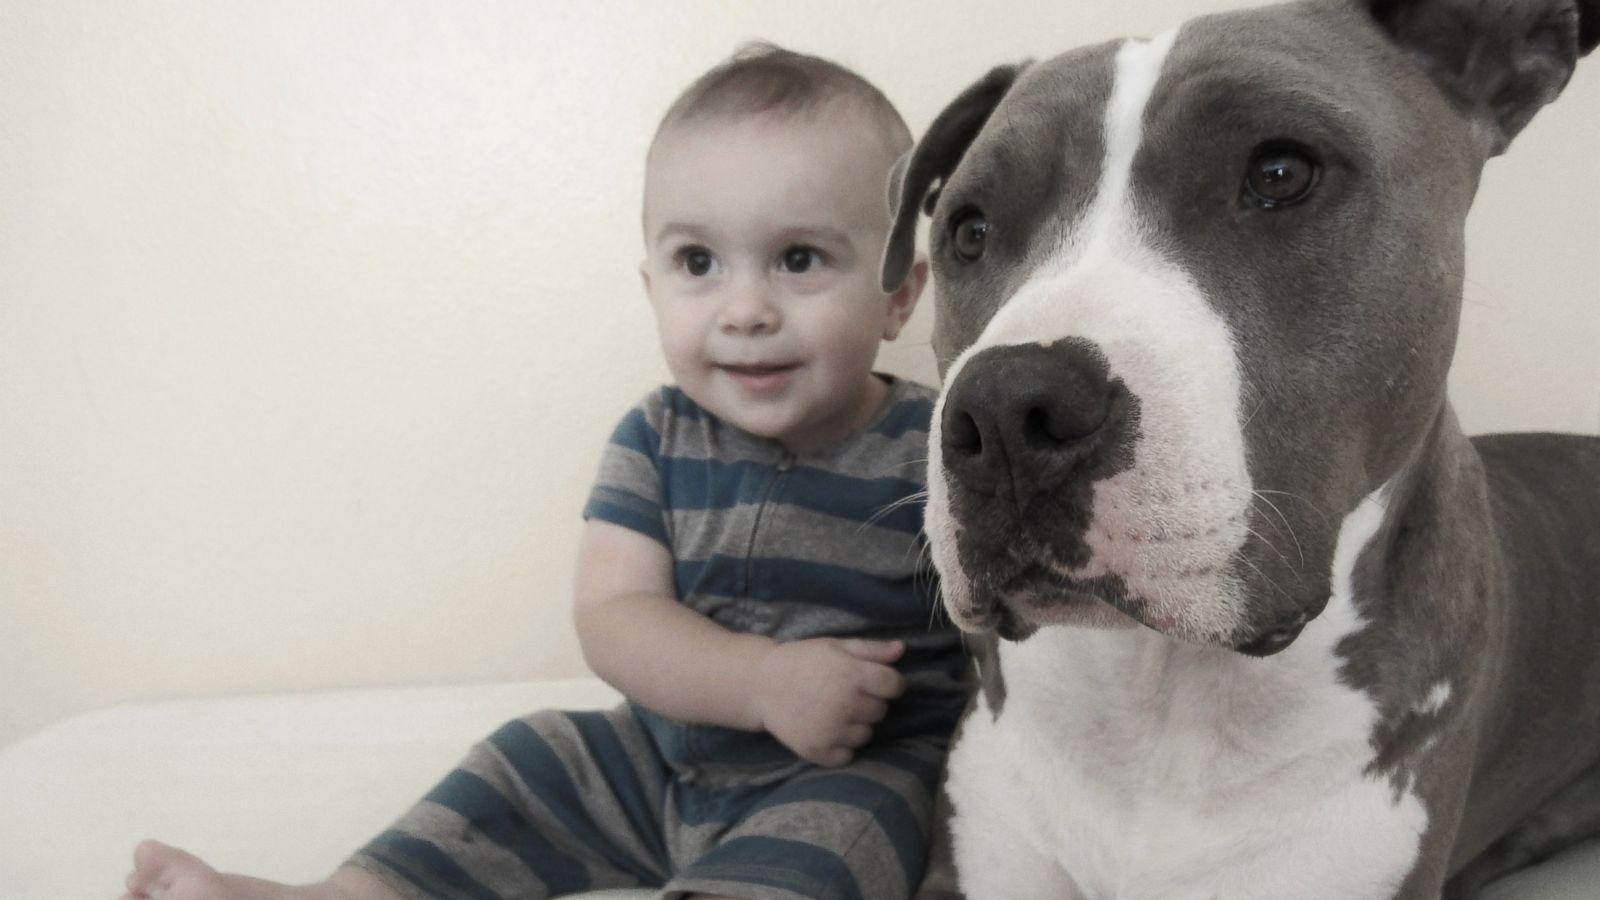 pitbull and baby